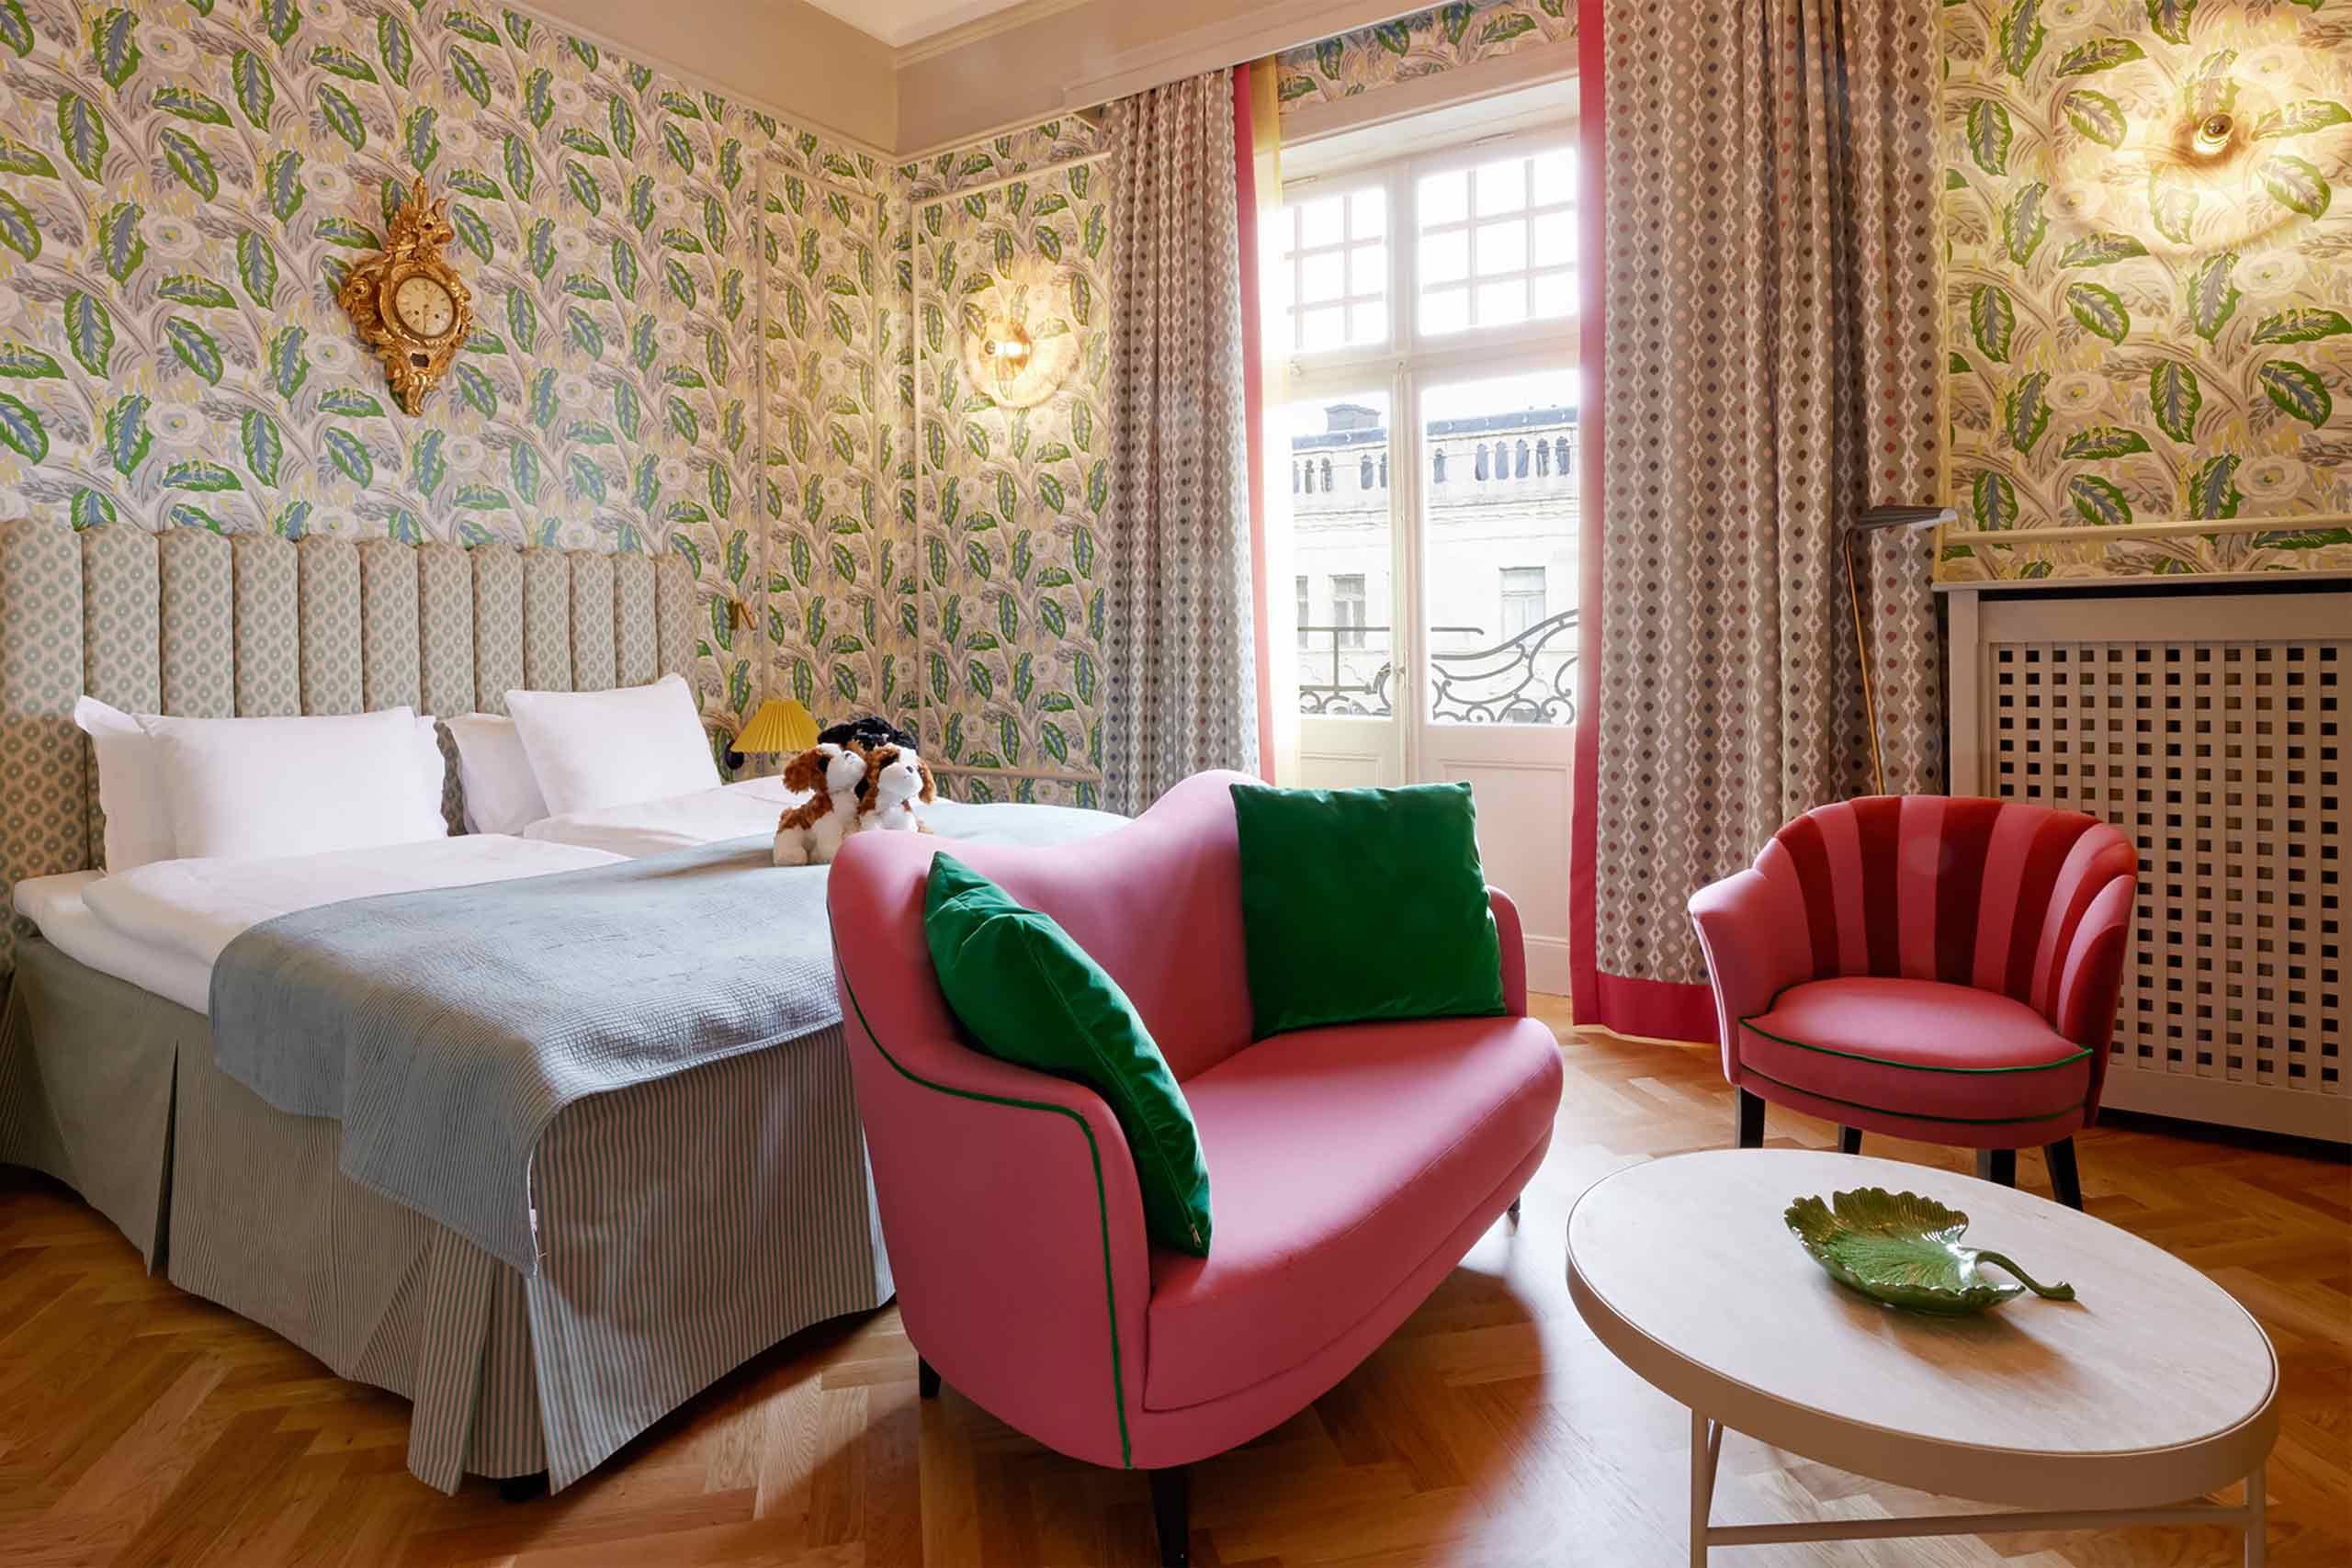 A bedroom at Hotel Kung Carl, Stockholm, Sweden